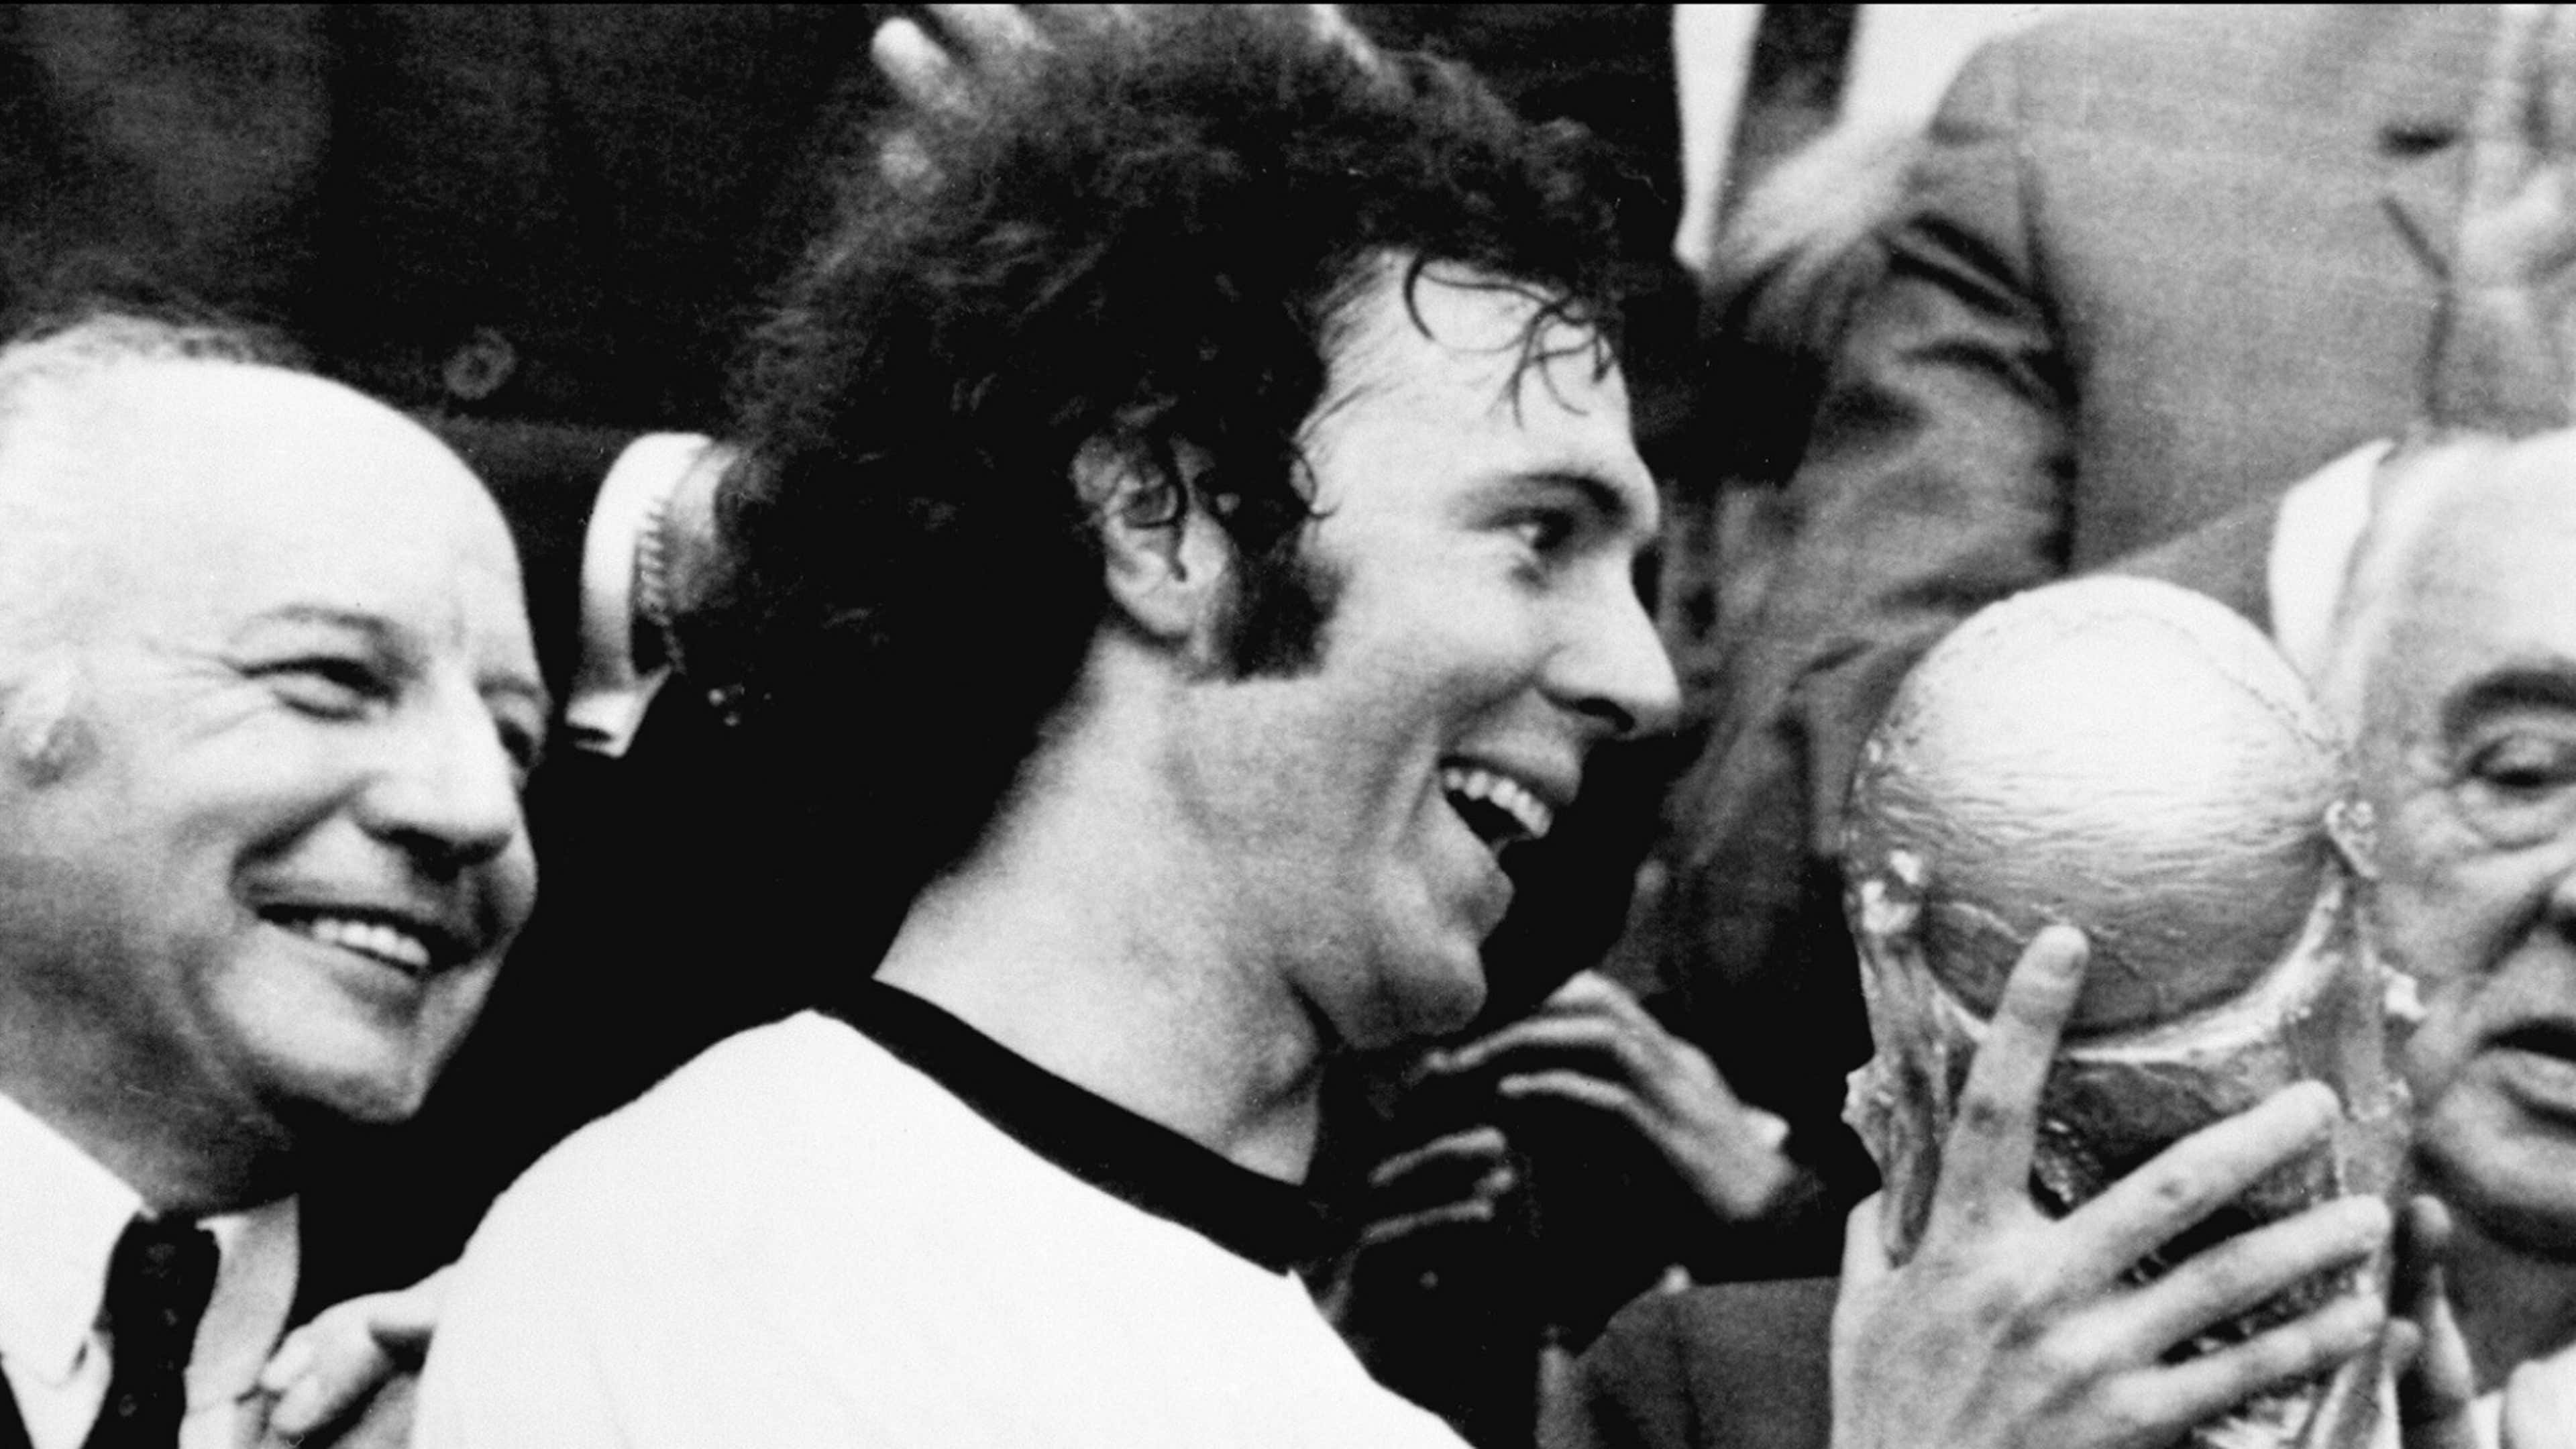 Franz Beckenbauer West Germany